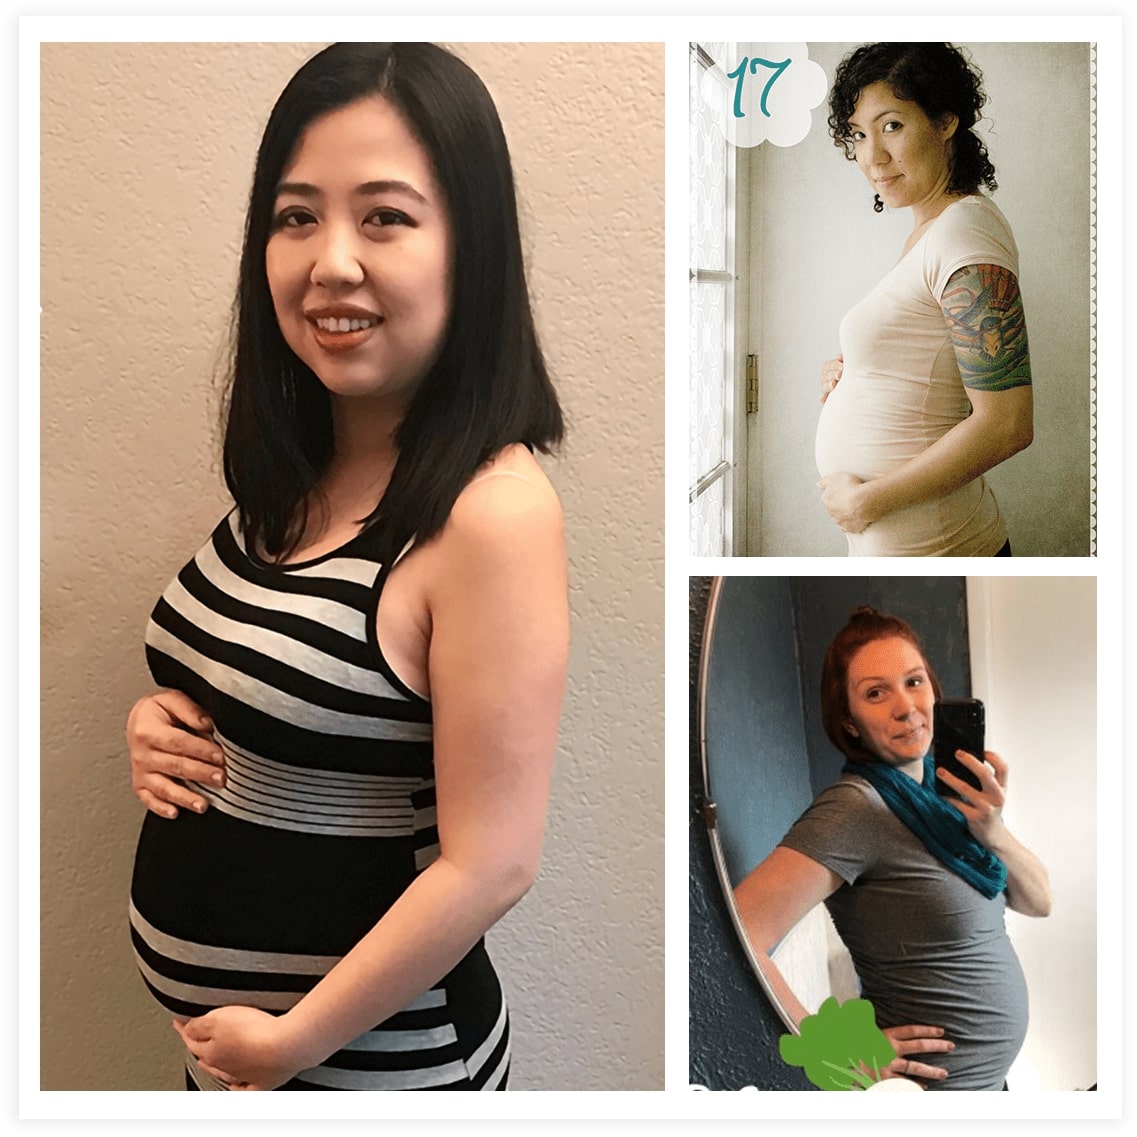 Thai phụ lưu ý bụng bầu: Hãy xem hình ảnh liên quan đến lưu ý trong việc chăm sóc bụng bầu của thai phụ, từ những điều cần tránh đến những cách để giúp chăm sóc cho sự phát triển khỏe mạnh của bé yêu trong bụng mẹ.